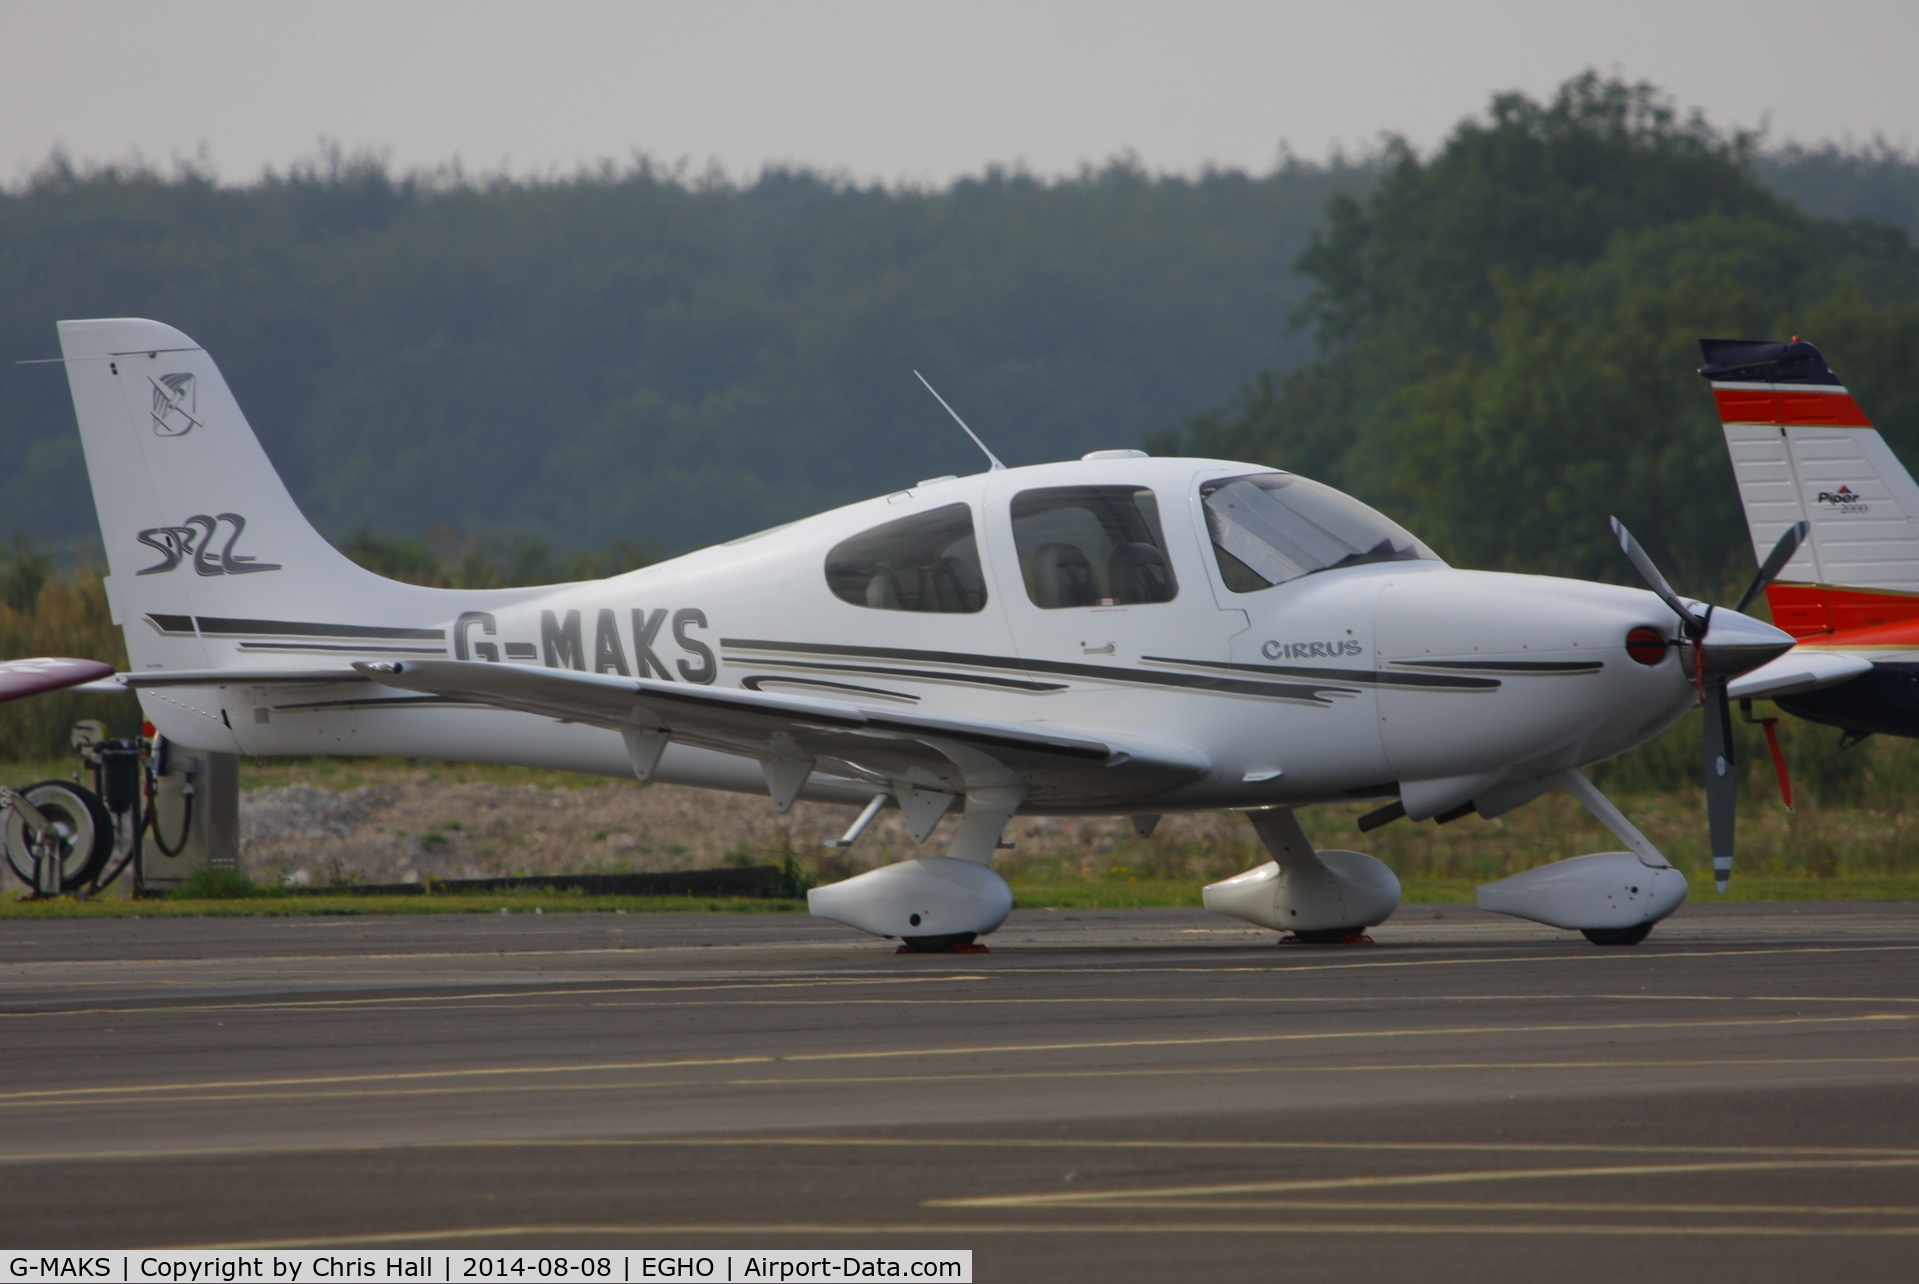 G-MAKS, 2002 Cirrus SR22 C/N 0367, at Thruxton Aerodrome